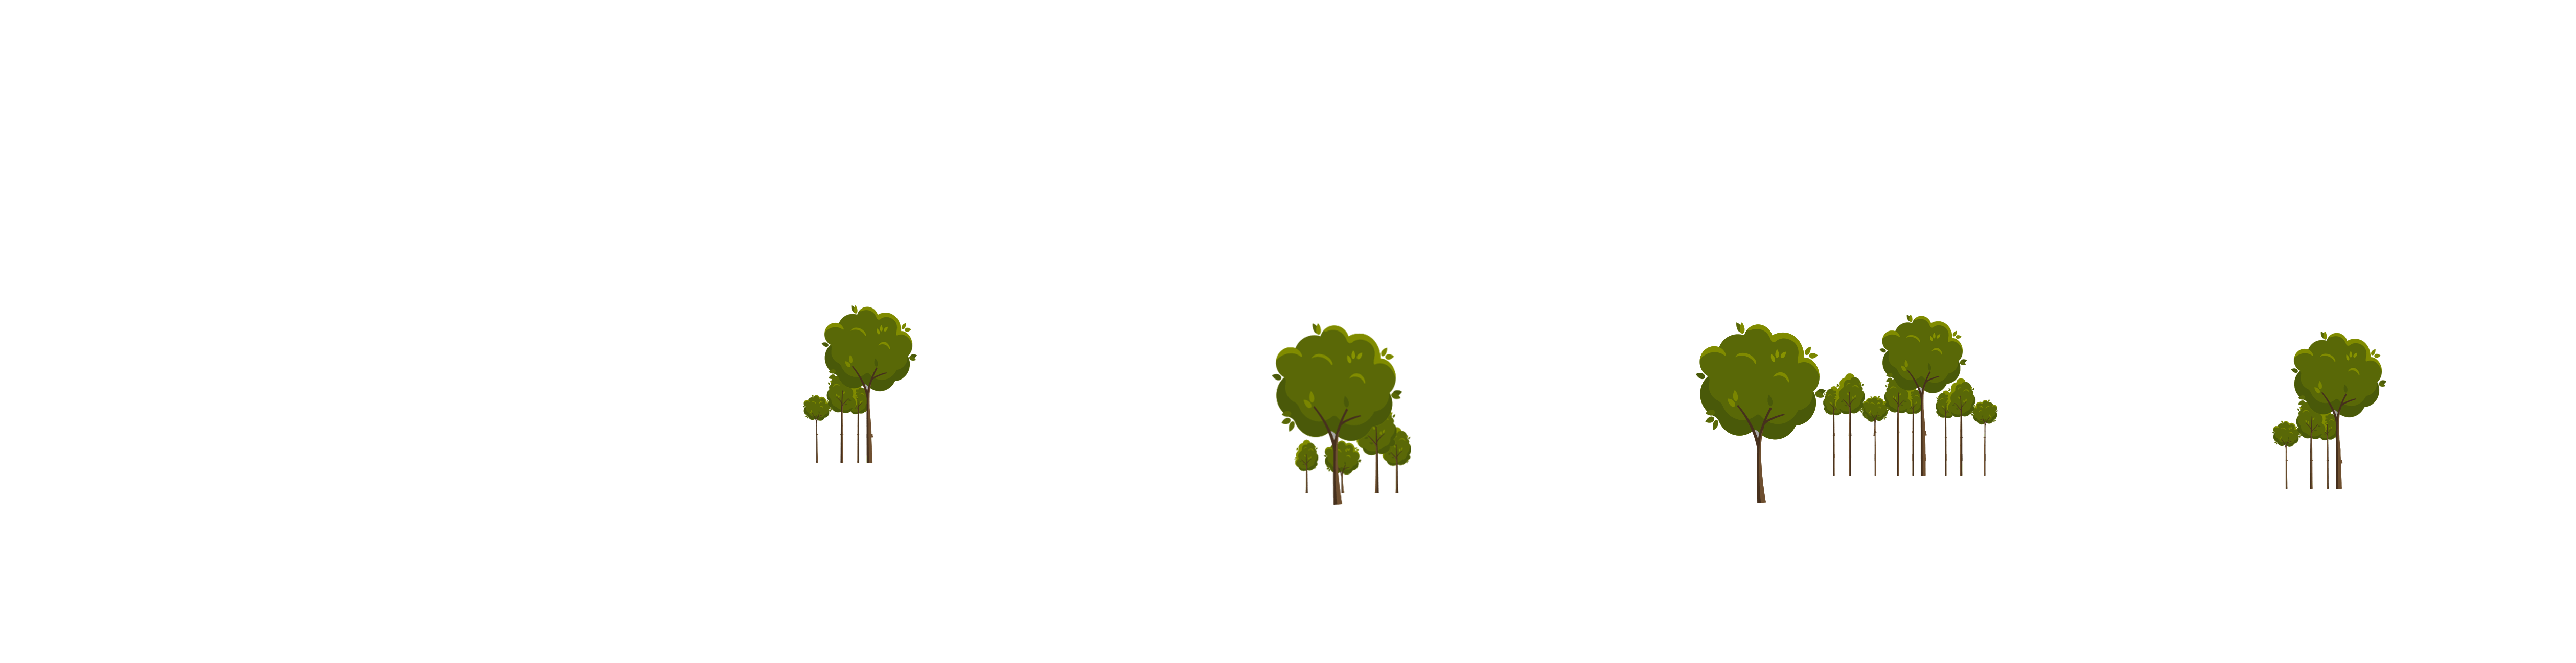 trees2